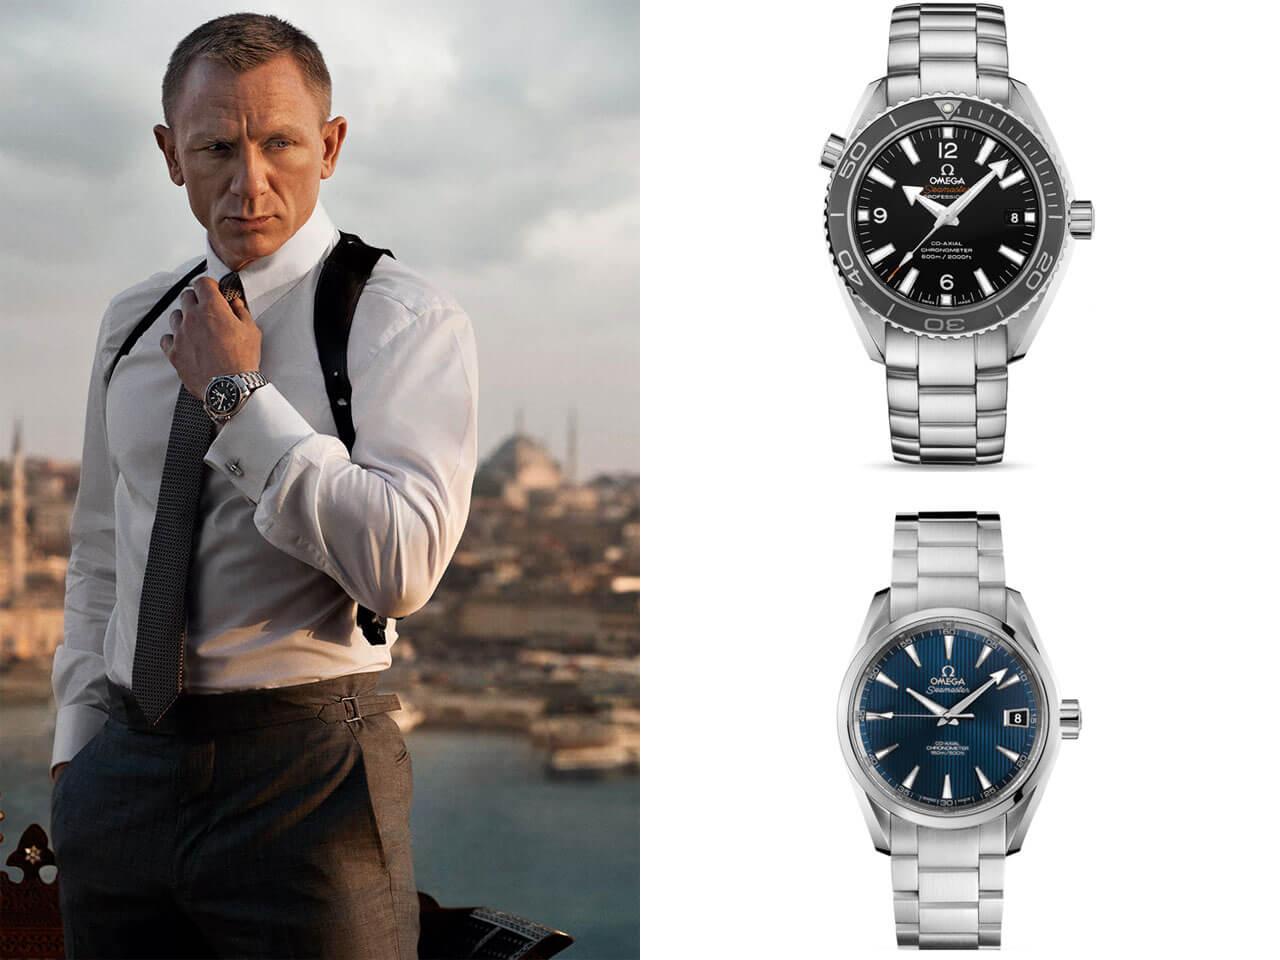 2012年に公開された『007 スカイフォール』（原題：Skyfall）でダニエル・クレイグが着用したオメガの腕時計